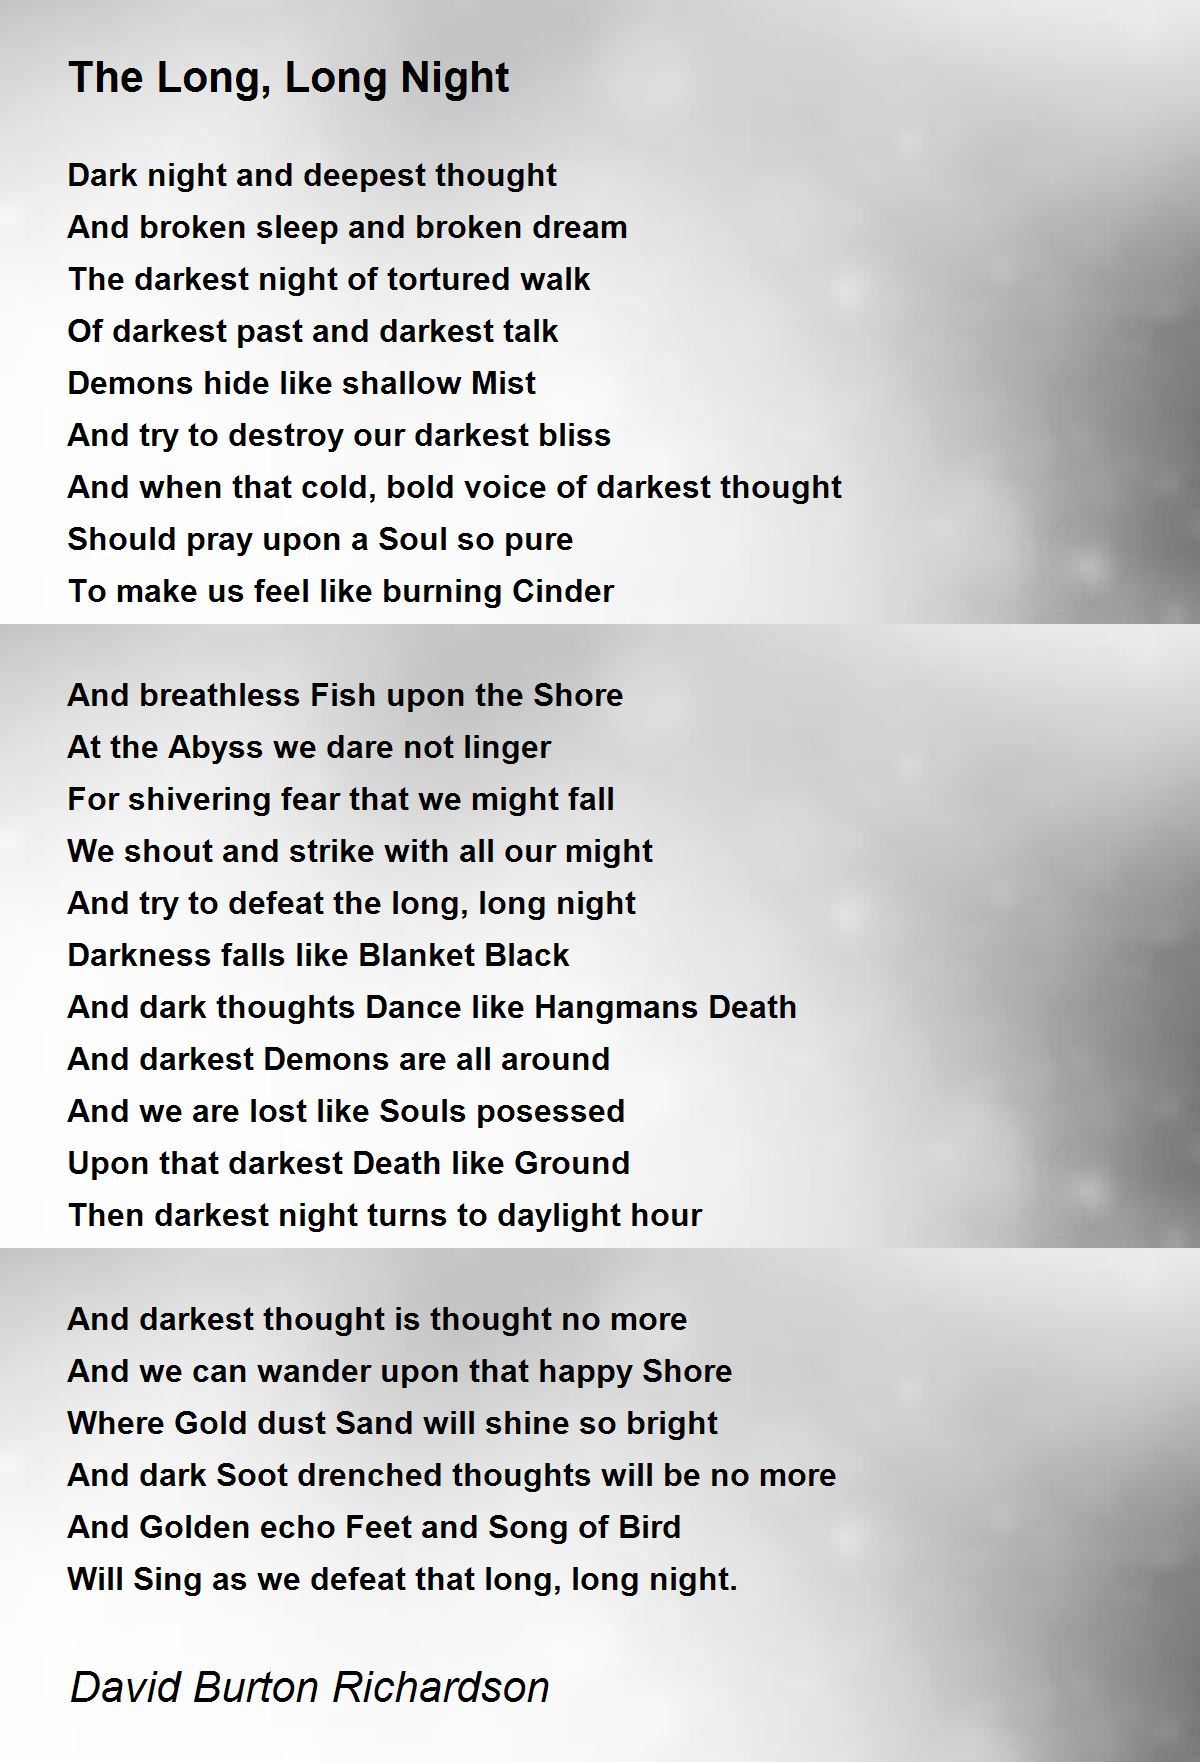 The Long, Long Night - The Long, Long Night Poem by David Burton Richardson